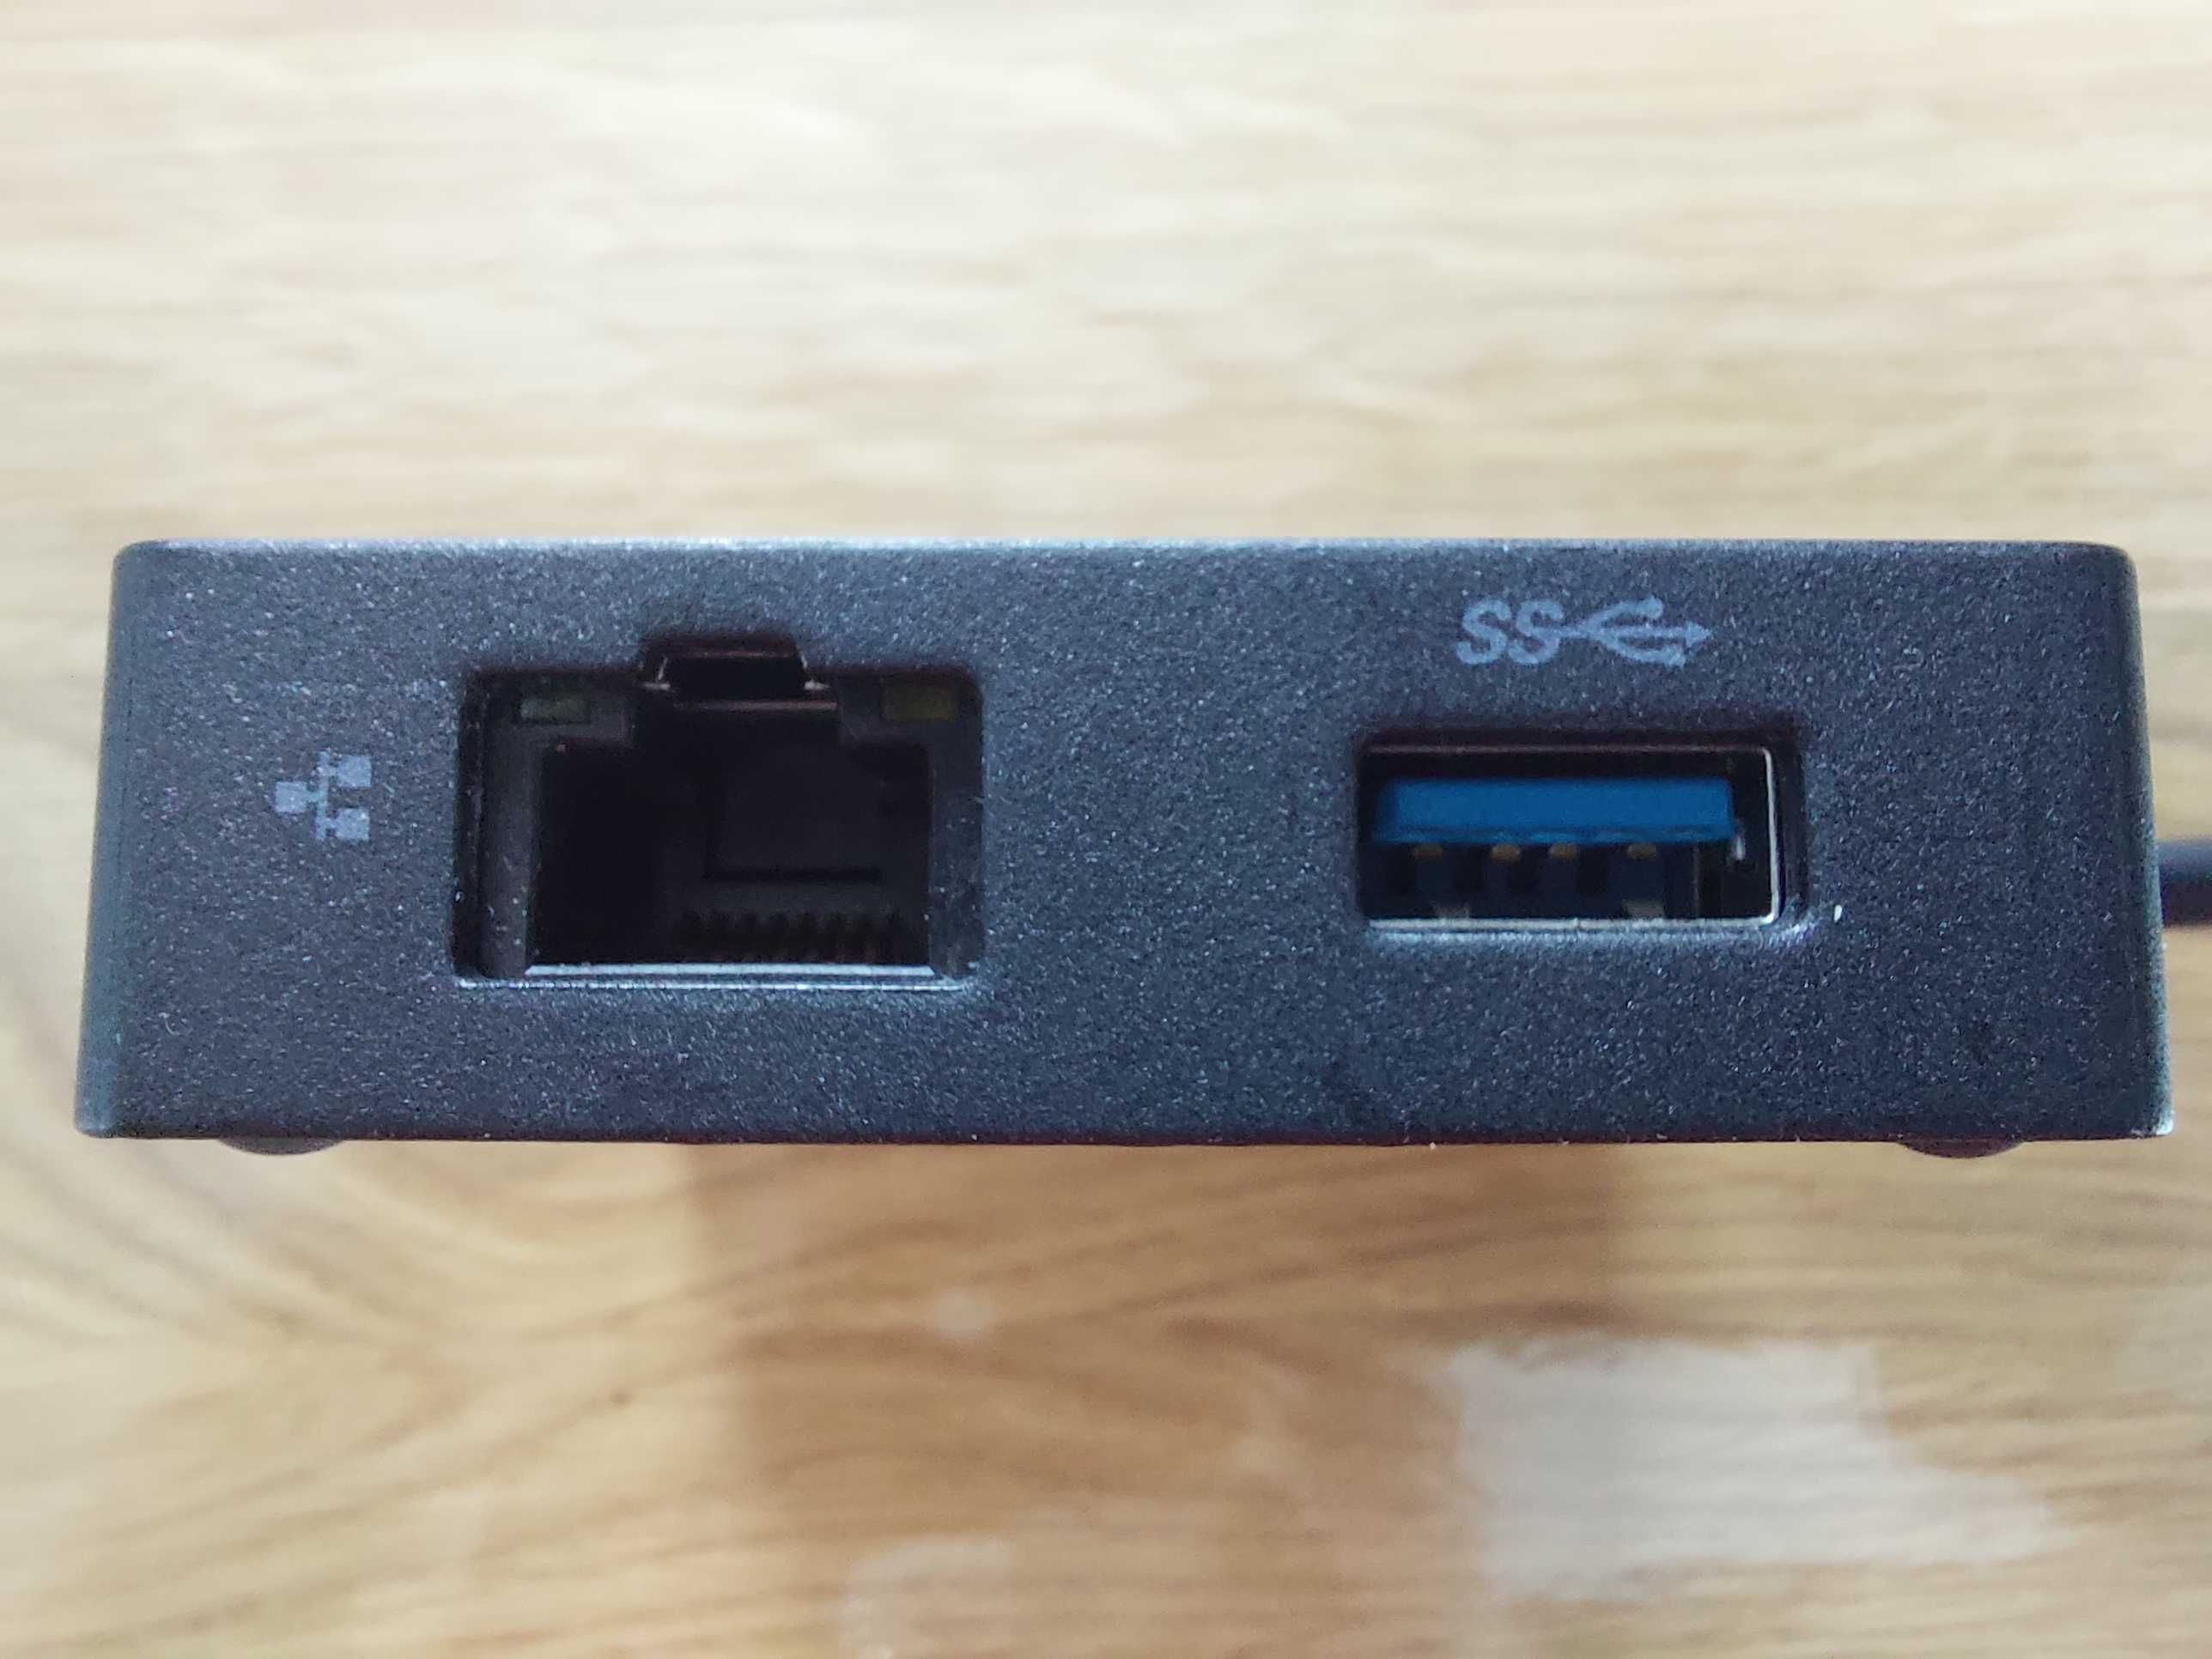 Lenovo USB-C Travel Hub